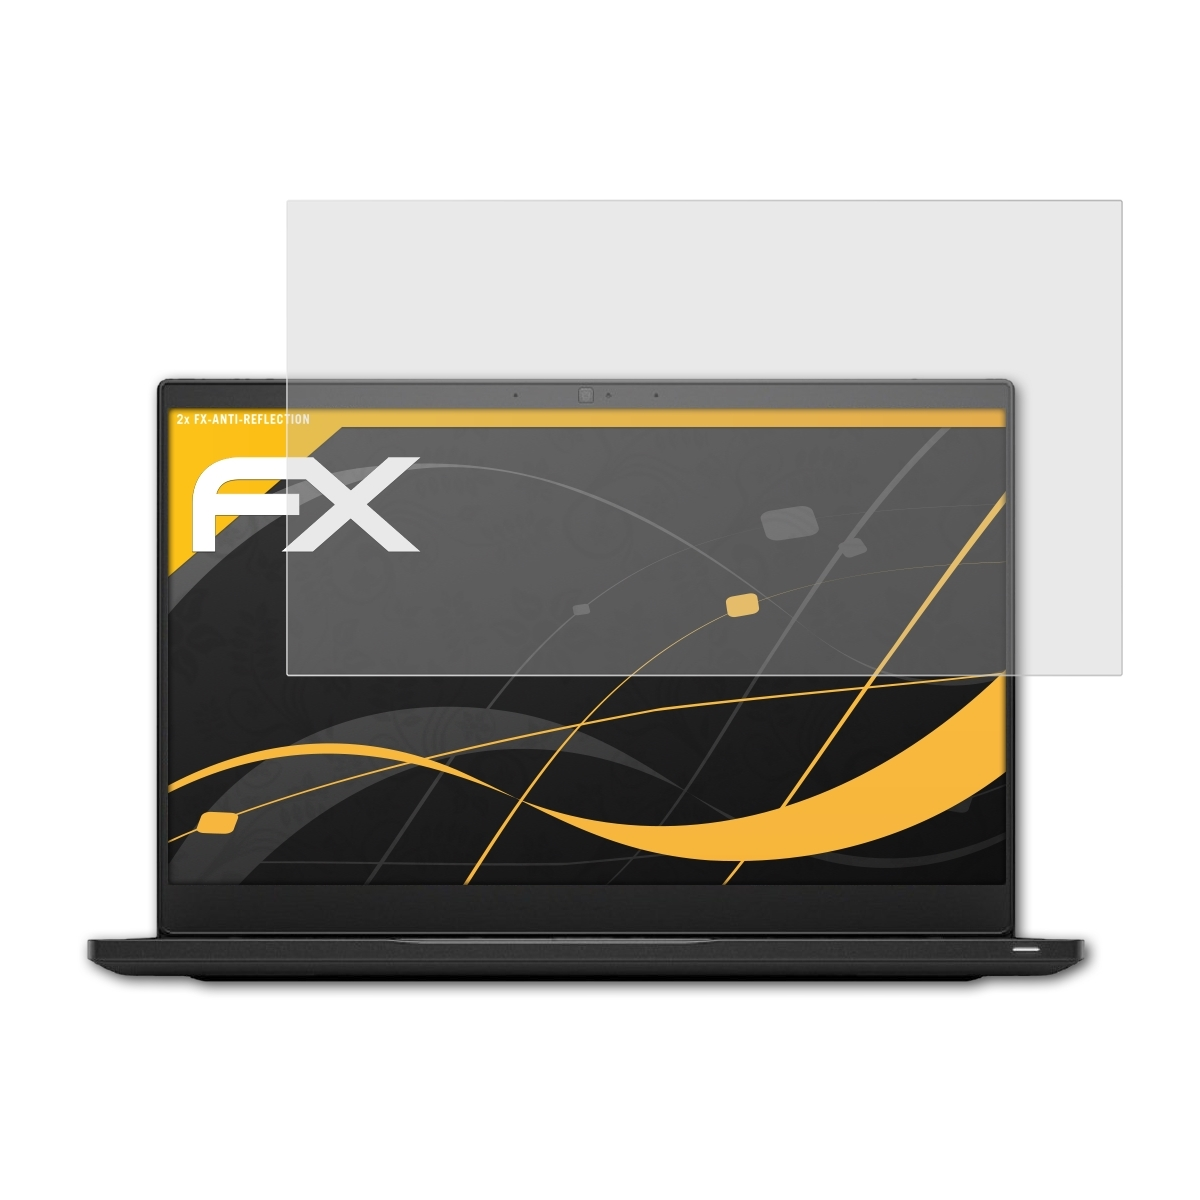 ATFOLIX 7390) FX-Antireflex Displayschutz(für 2x Latitude Dell